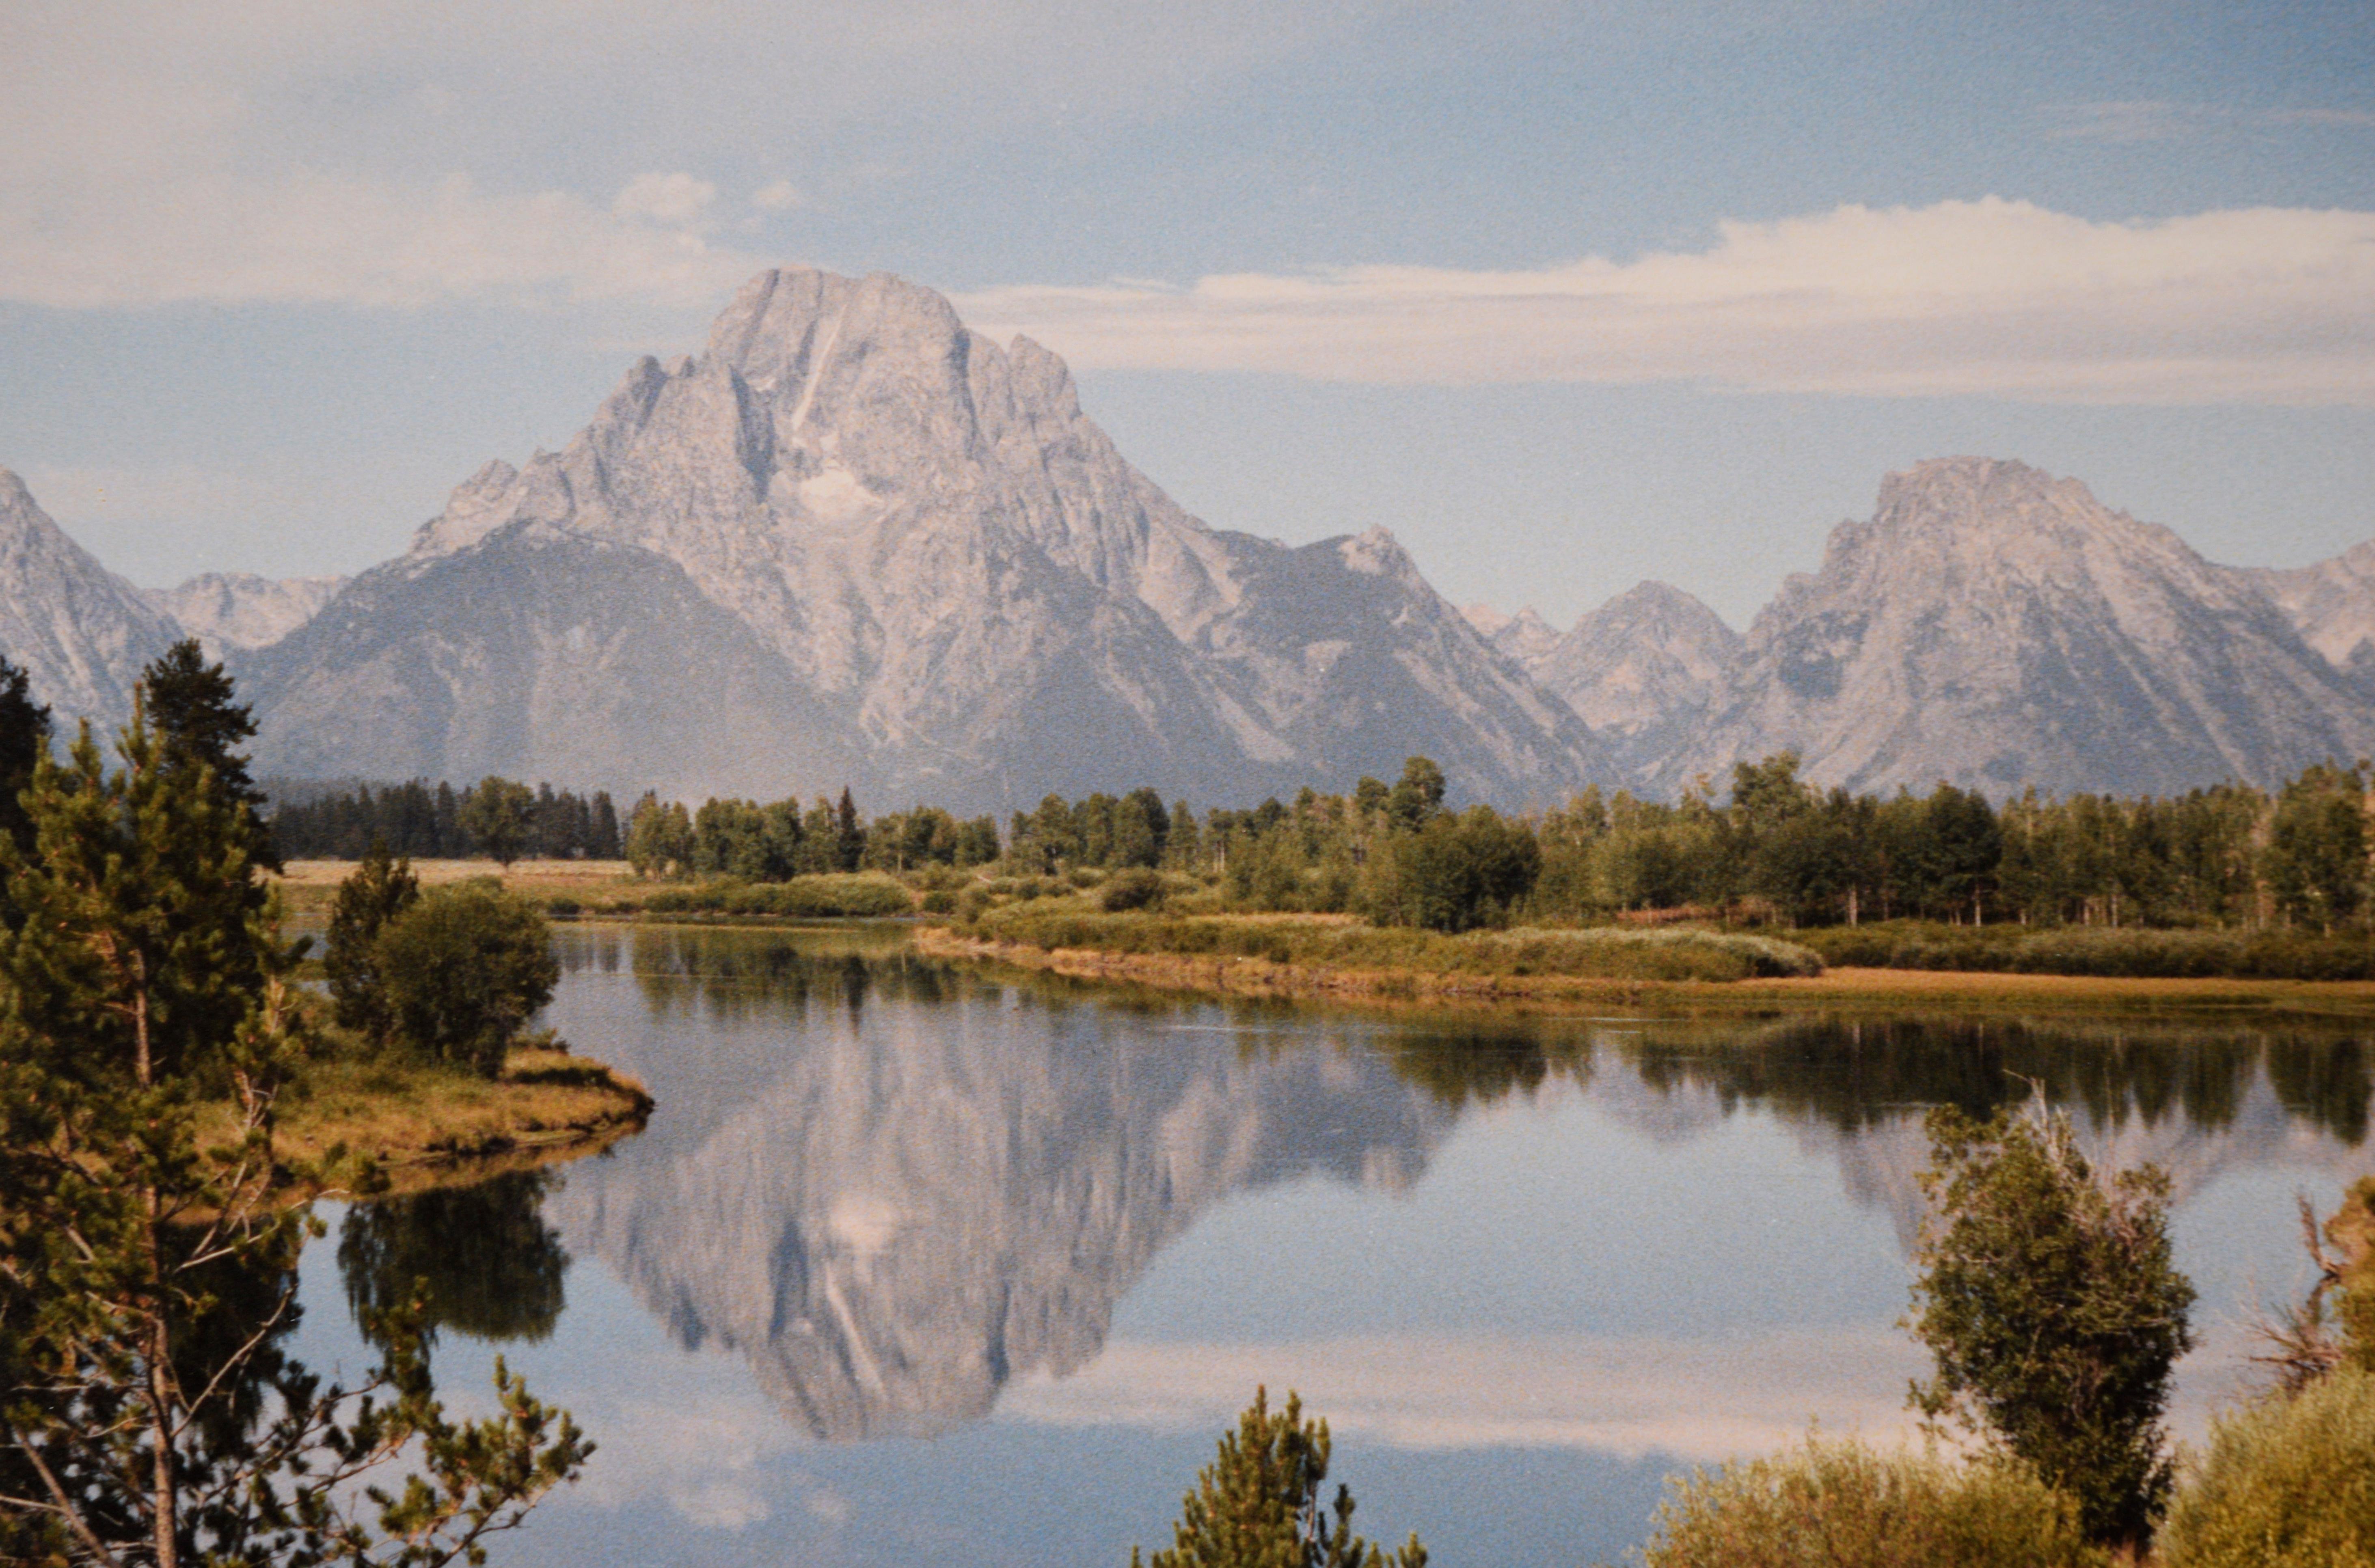 Grand Teton National Park – Originalfotografie von 1988

Original-Farbfoto von 1988 des Grand Teton National Park in Wyoming im Stil von Steve Mattheis,
. Das Foto zeigt die Teton-Gebirgskette mit ihrem klaren Spiegelbild auf dem ruhigen See